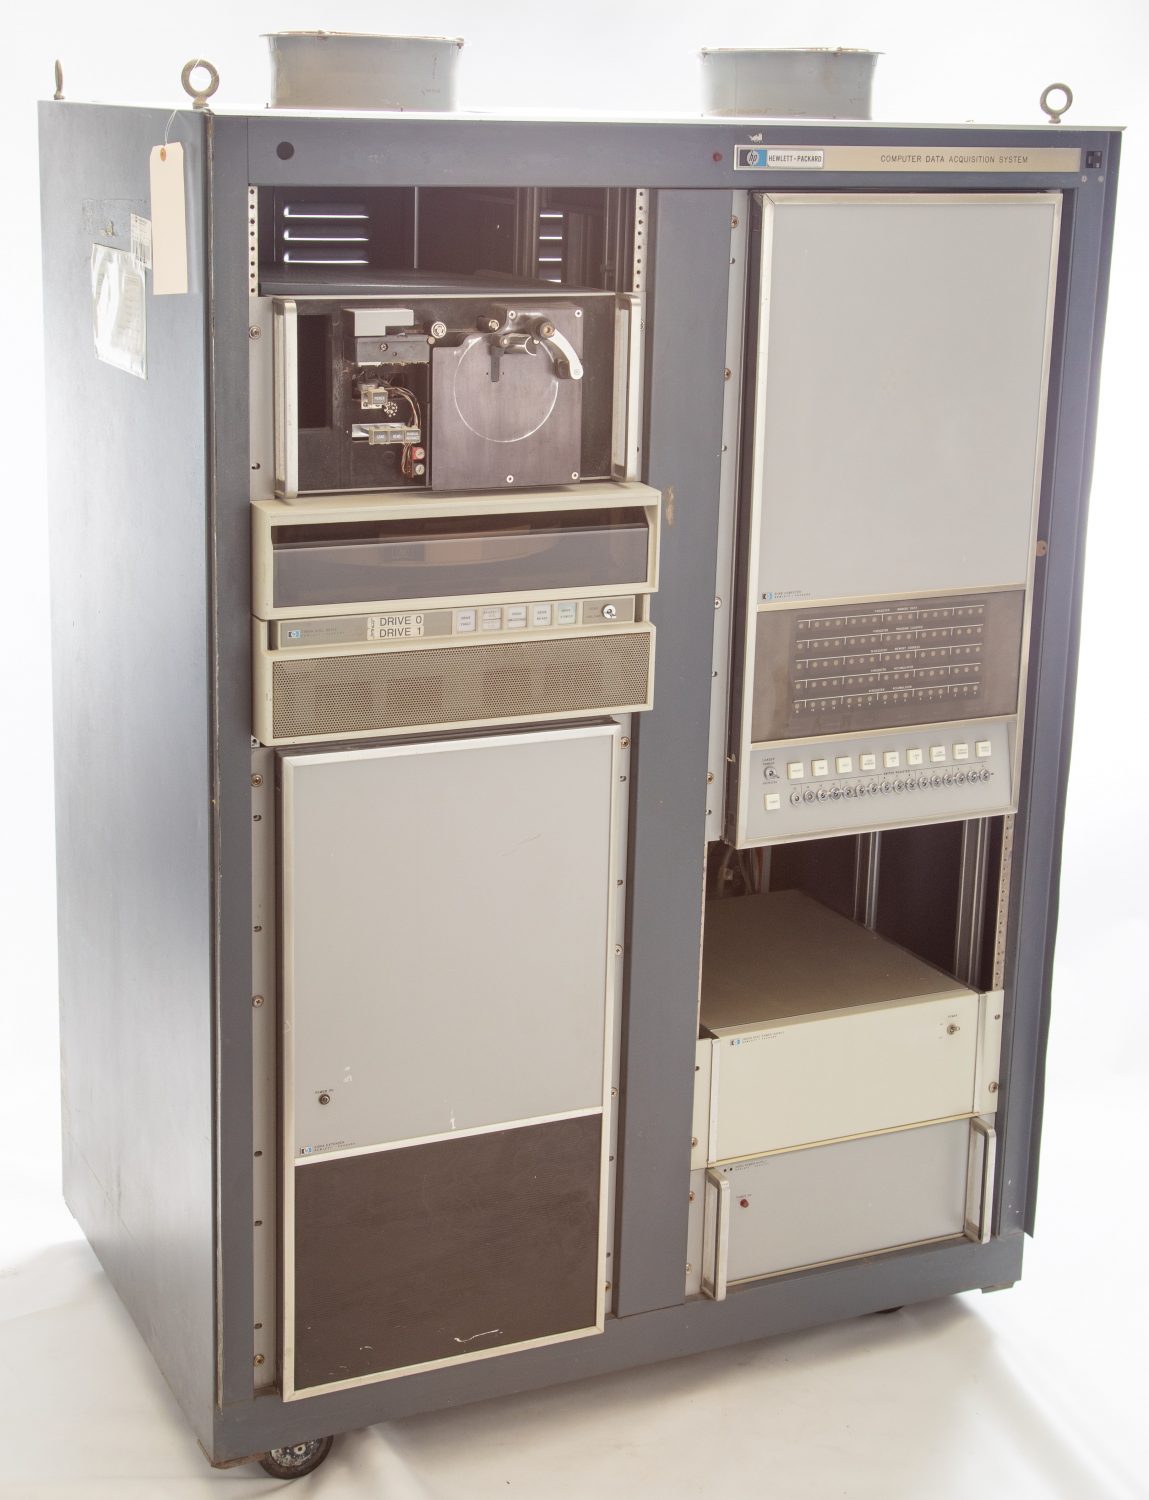 Photo of the HP 2116A, Hewlett-Packard's first computer.